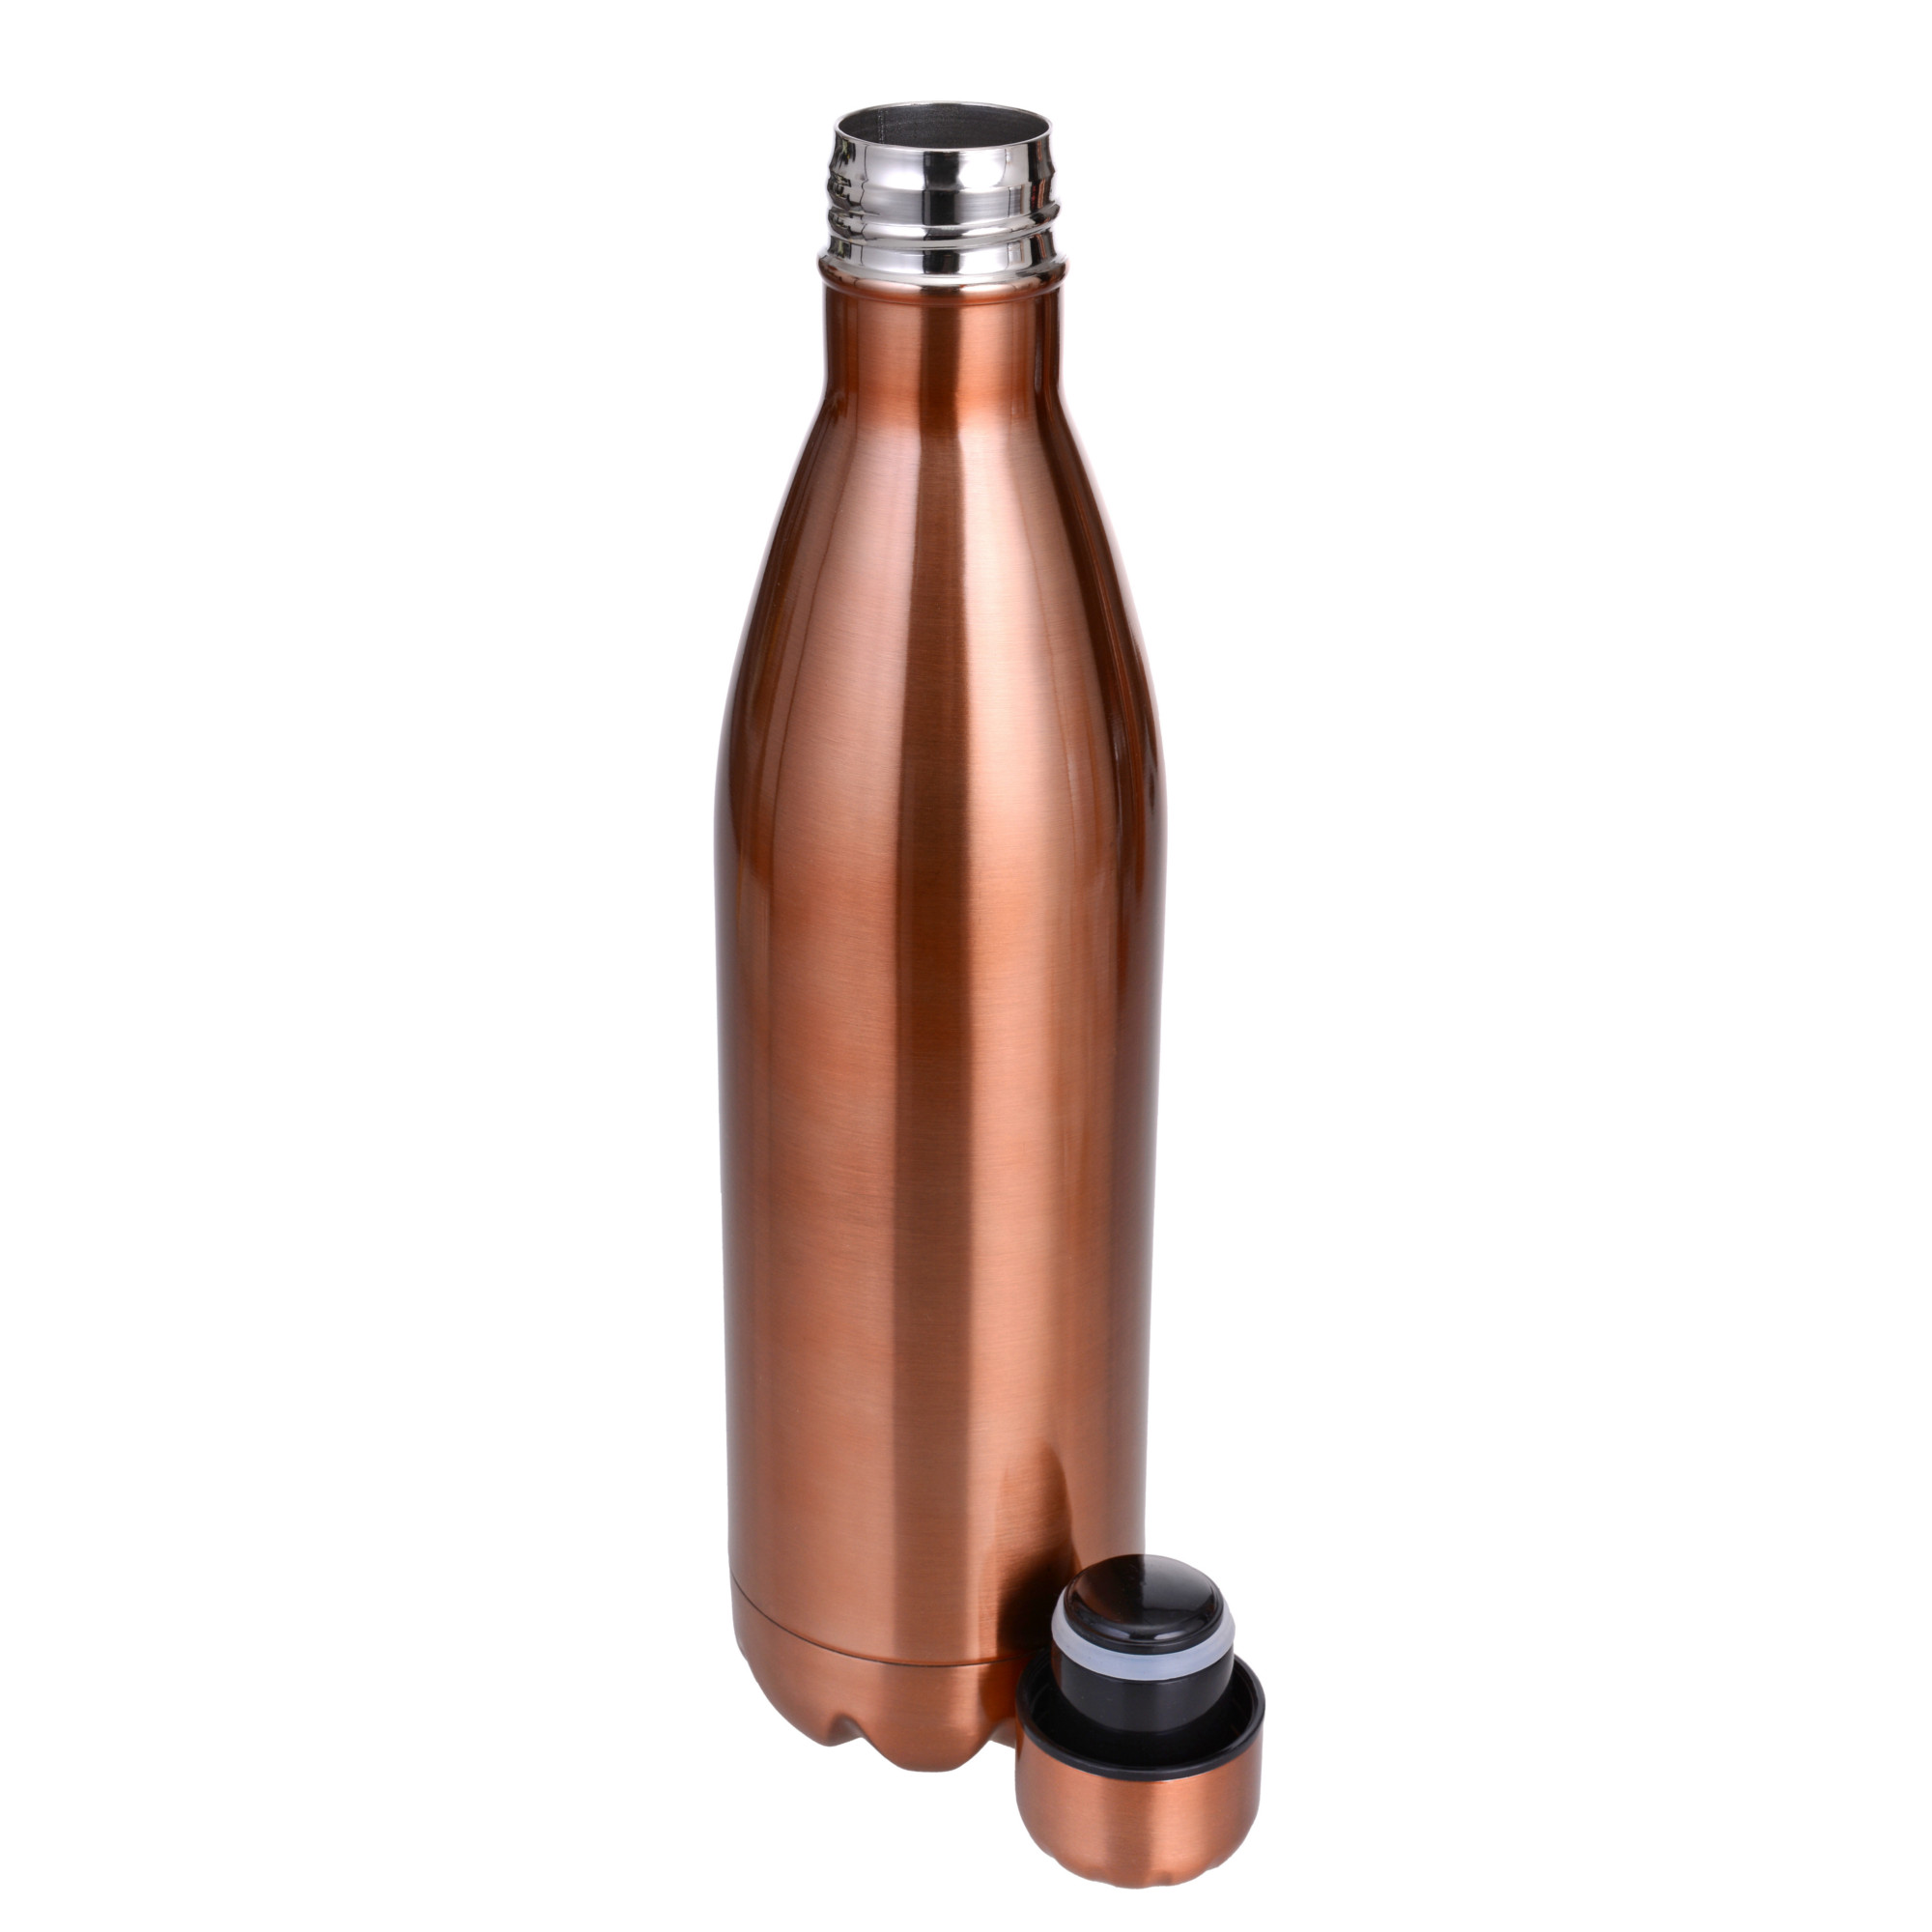 Thermosflasche, 750 ml, Edelstahl, Kohlensäure geeignet, kupferfarbig